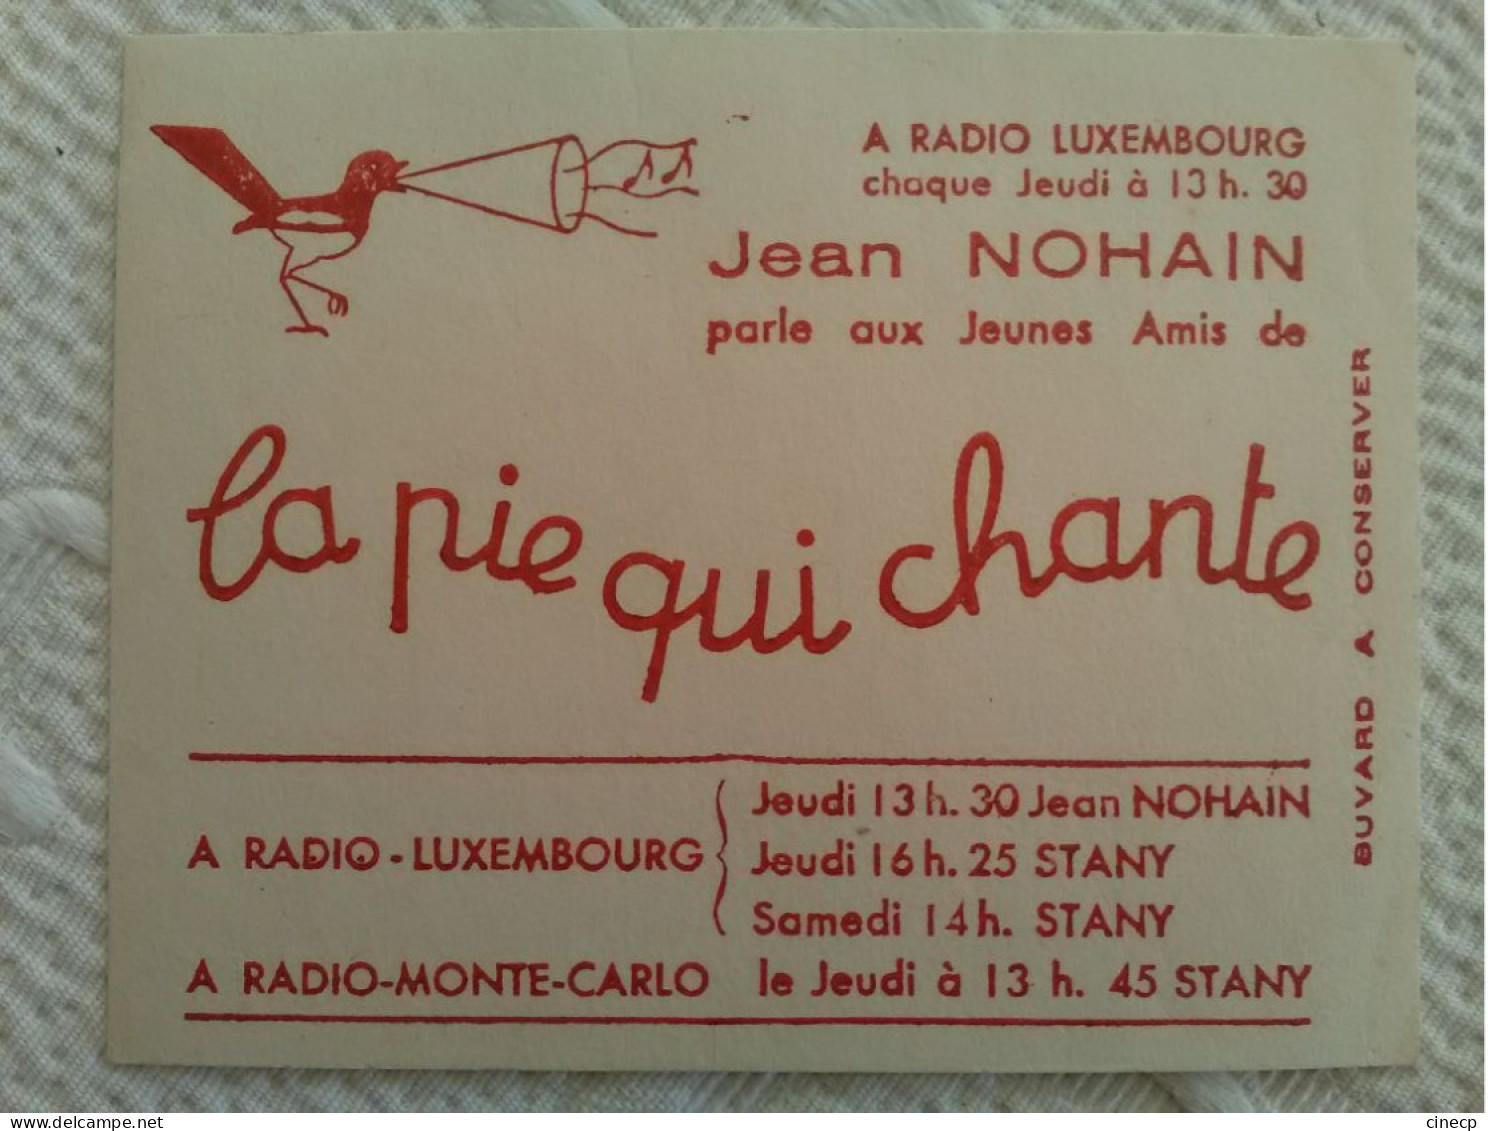 Buvard Publicitaire Ancien LA PIE QUI CHANTE ILLUSTRATEUR Radio Luxembourg Monte Carlo Jean NOHAIN - Bambini